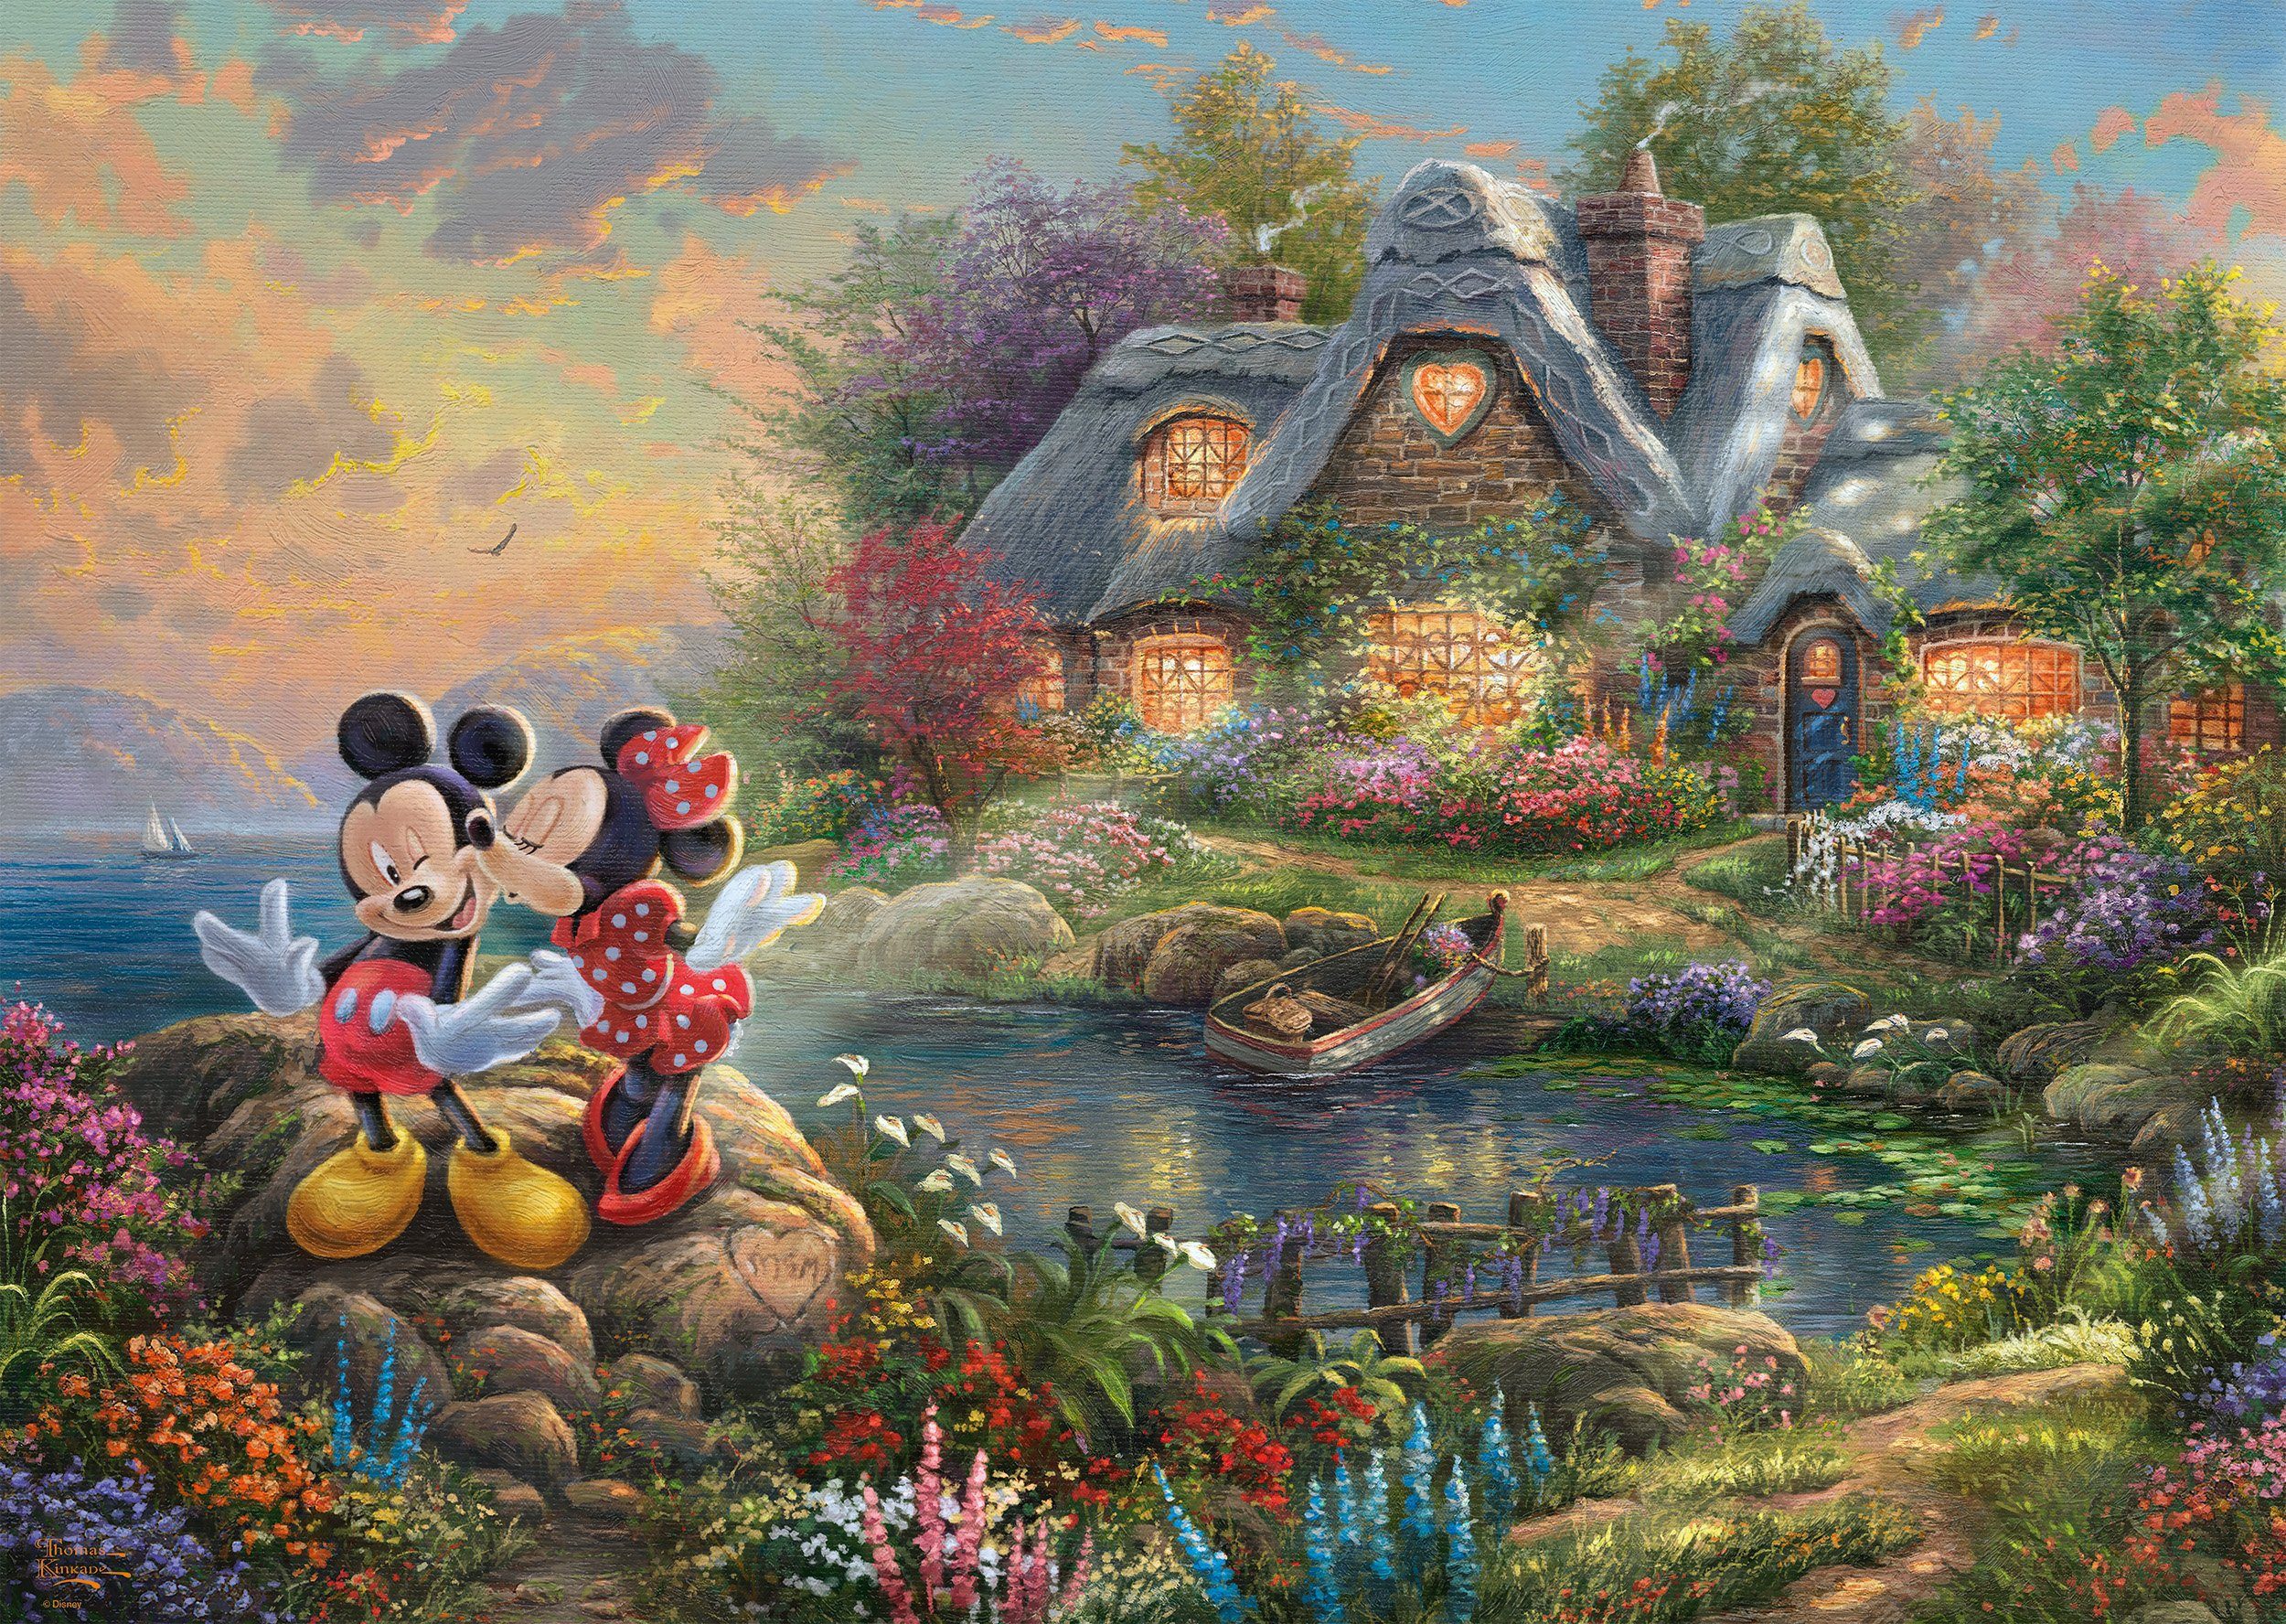 Schmidt Spiele Puzzle Disney, Thomas Mickey Kinkade Minnie, Puzzleteile, & 1000 Sweethearts